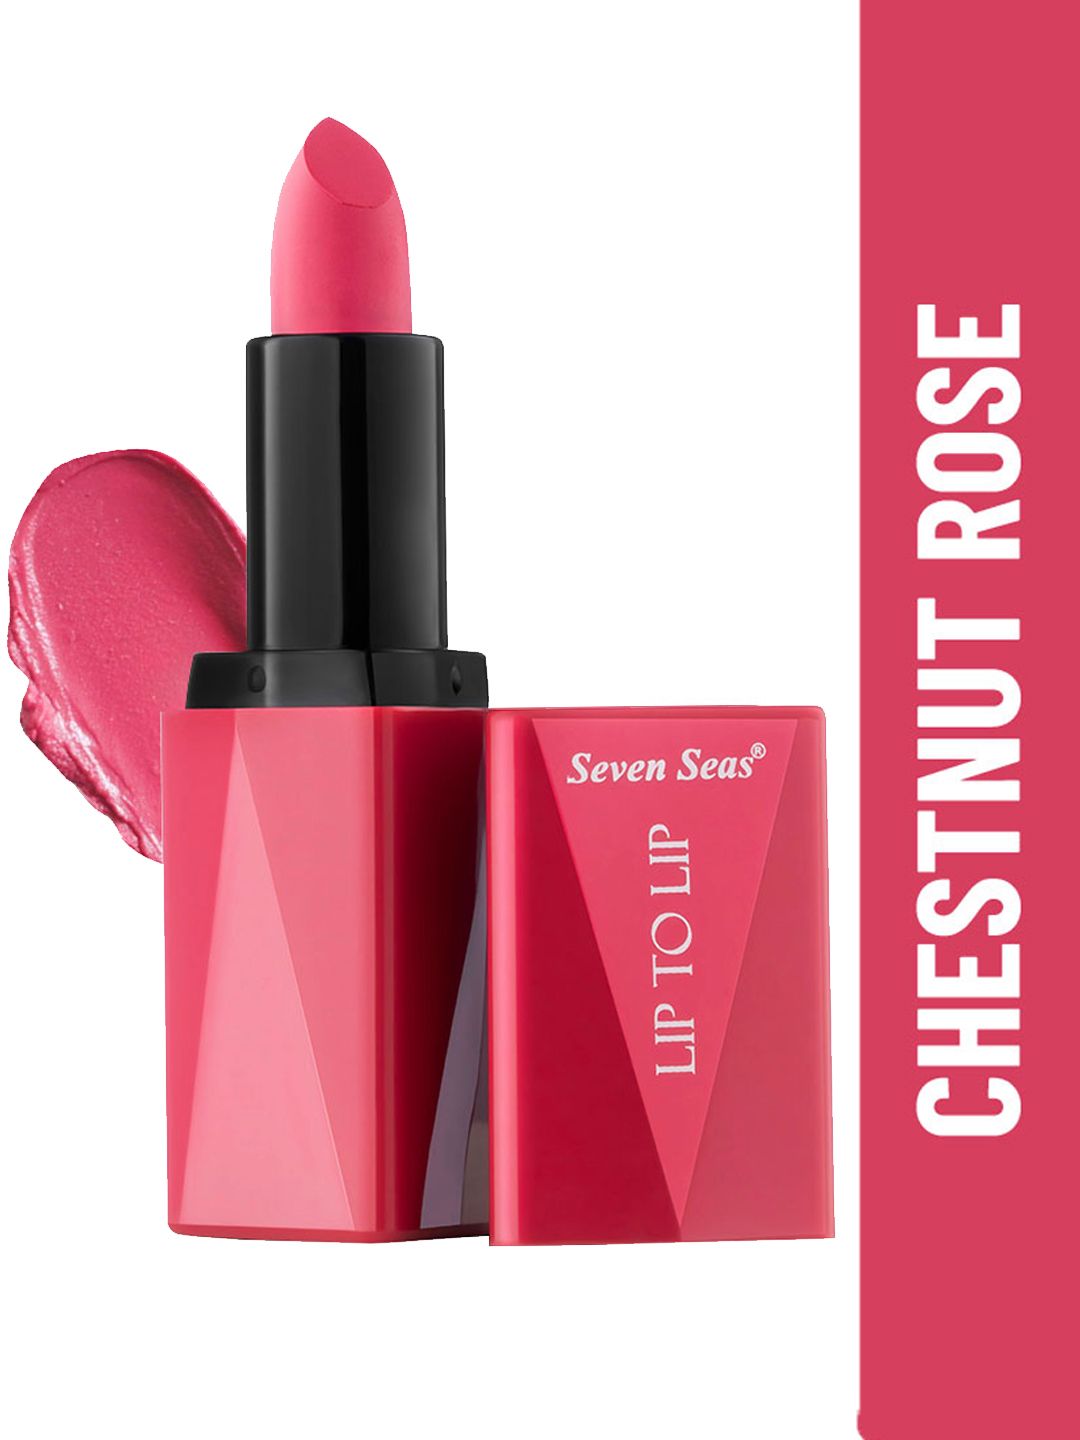 Seven Seas Lip To Lip Matte Lipstick -Chestnut Rose Price in India